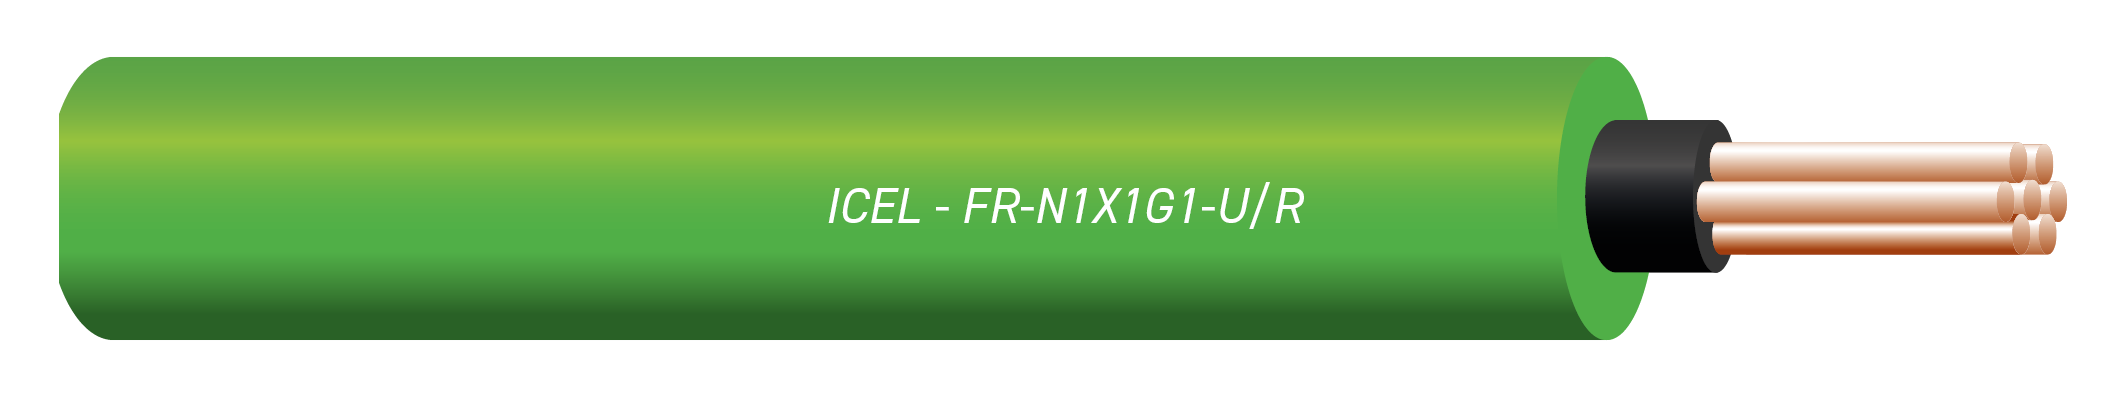 Cable Euroclasse Cca-s1,d1,a1 FR-N1 X1G1 AFU 1000 Plus 3G10mm2